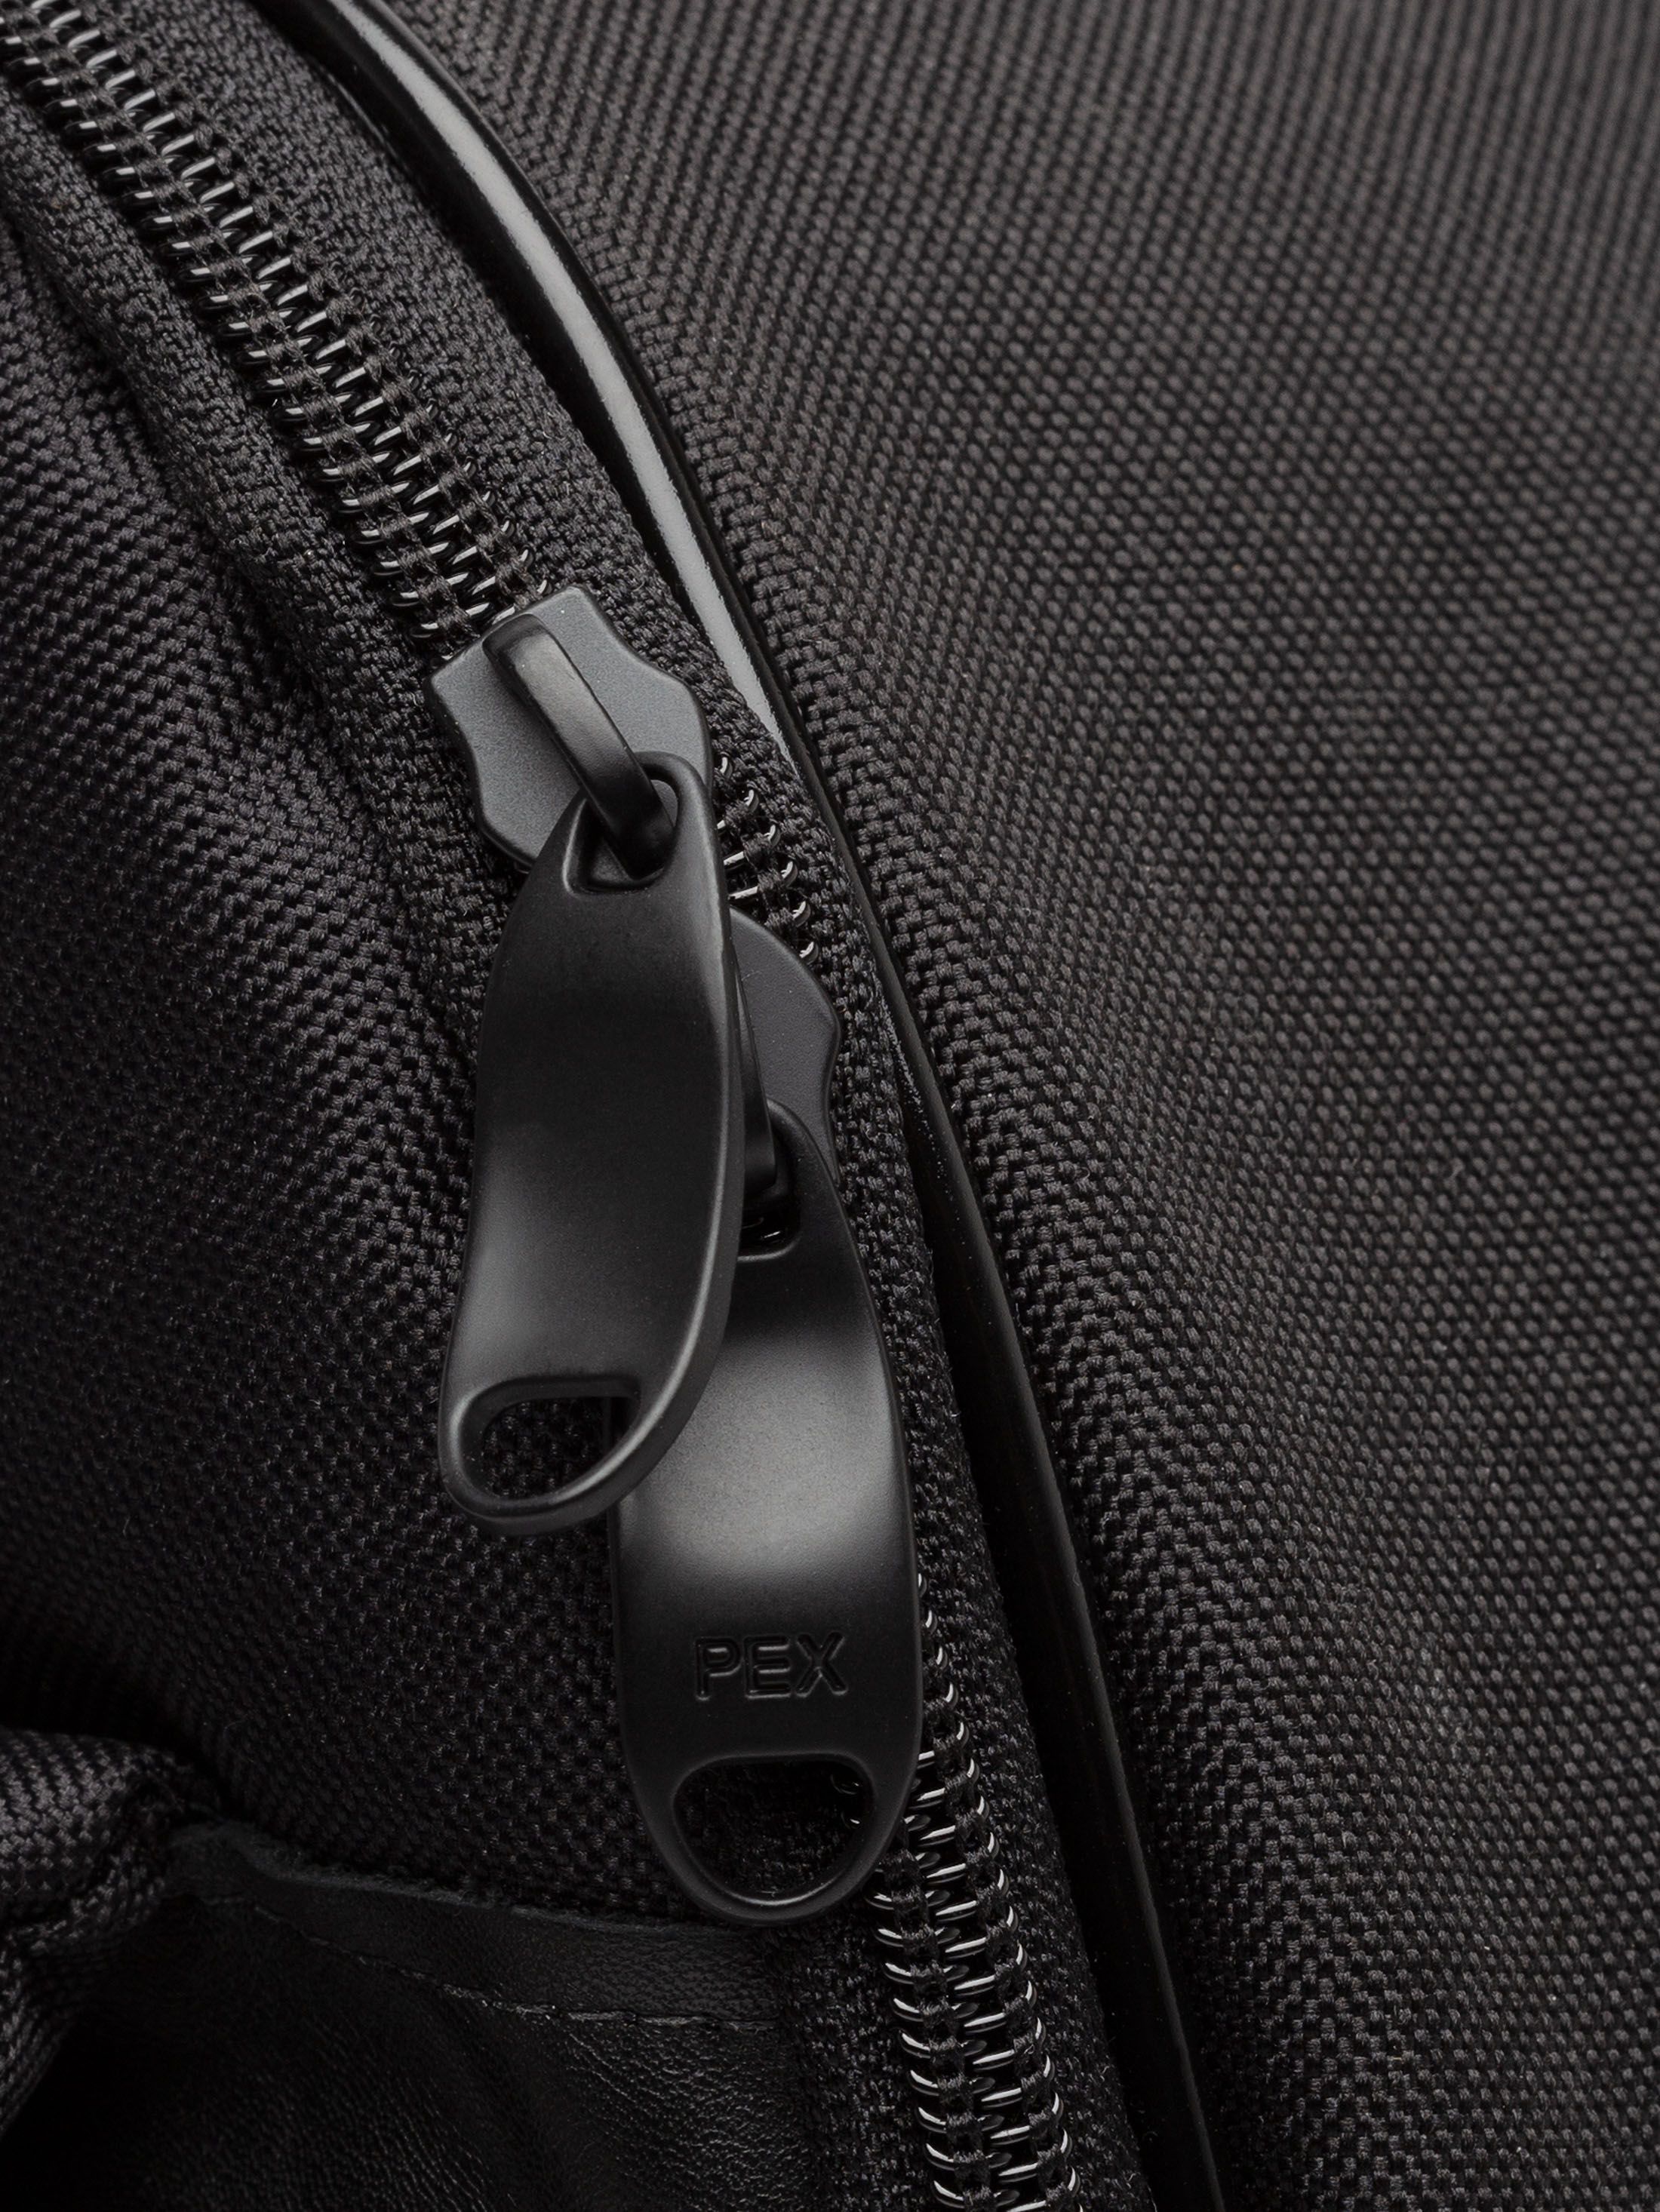 zipper detail of custom backpack